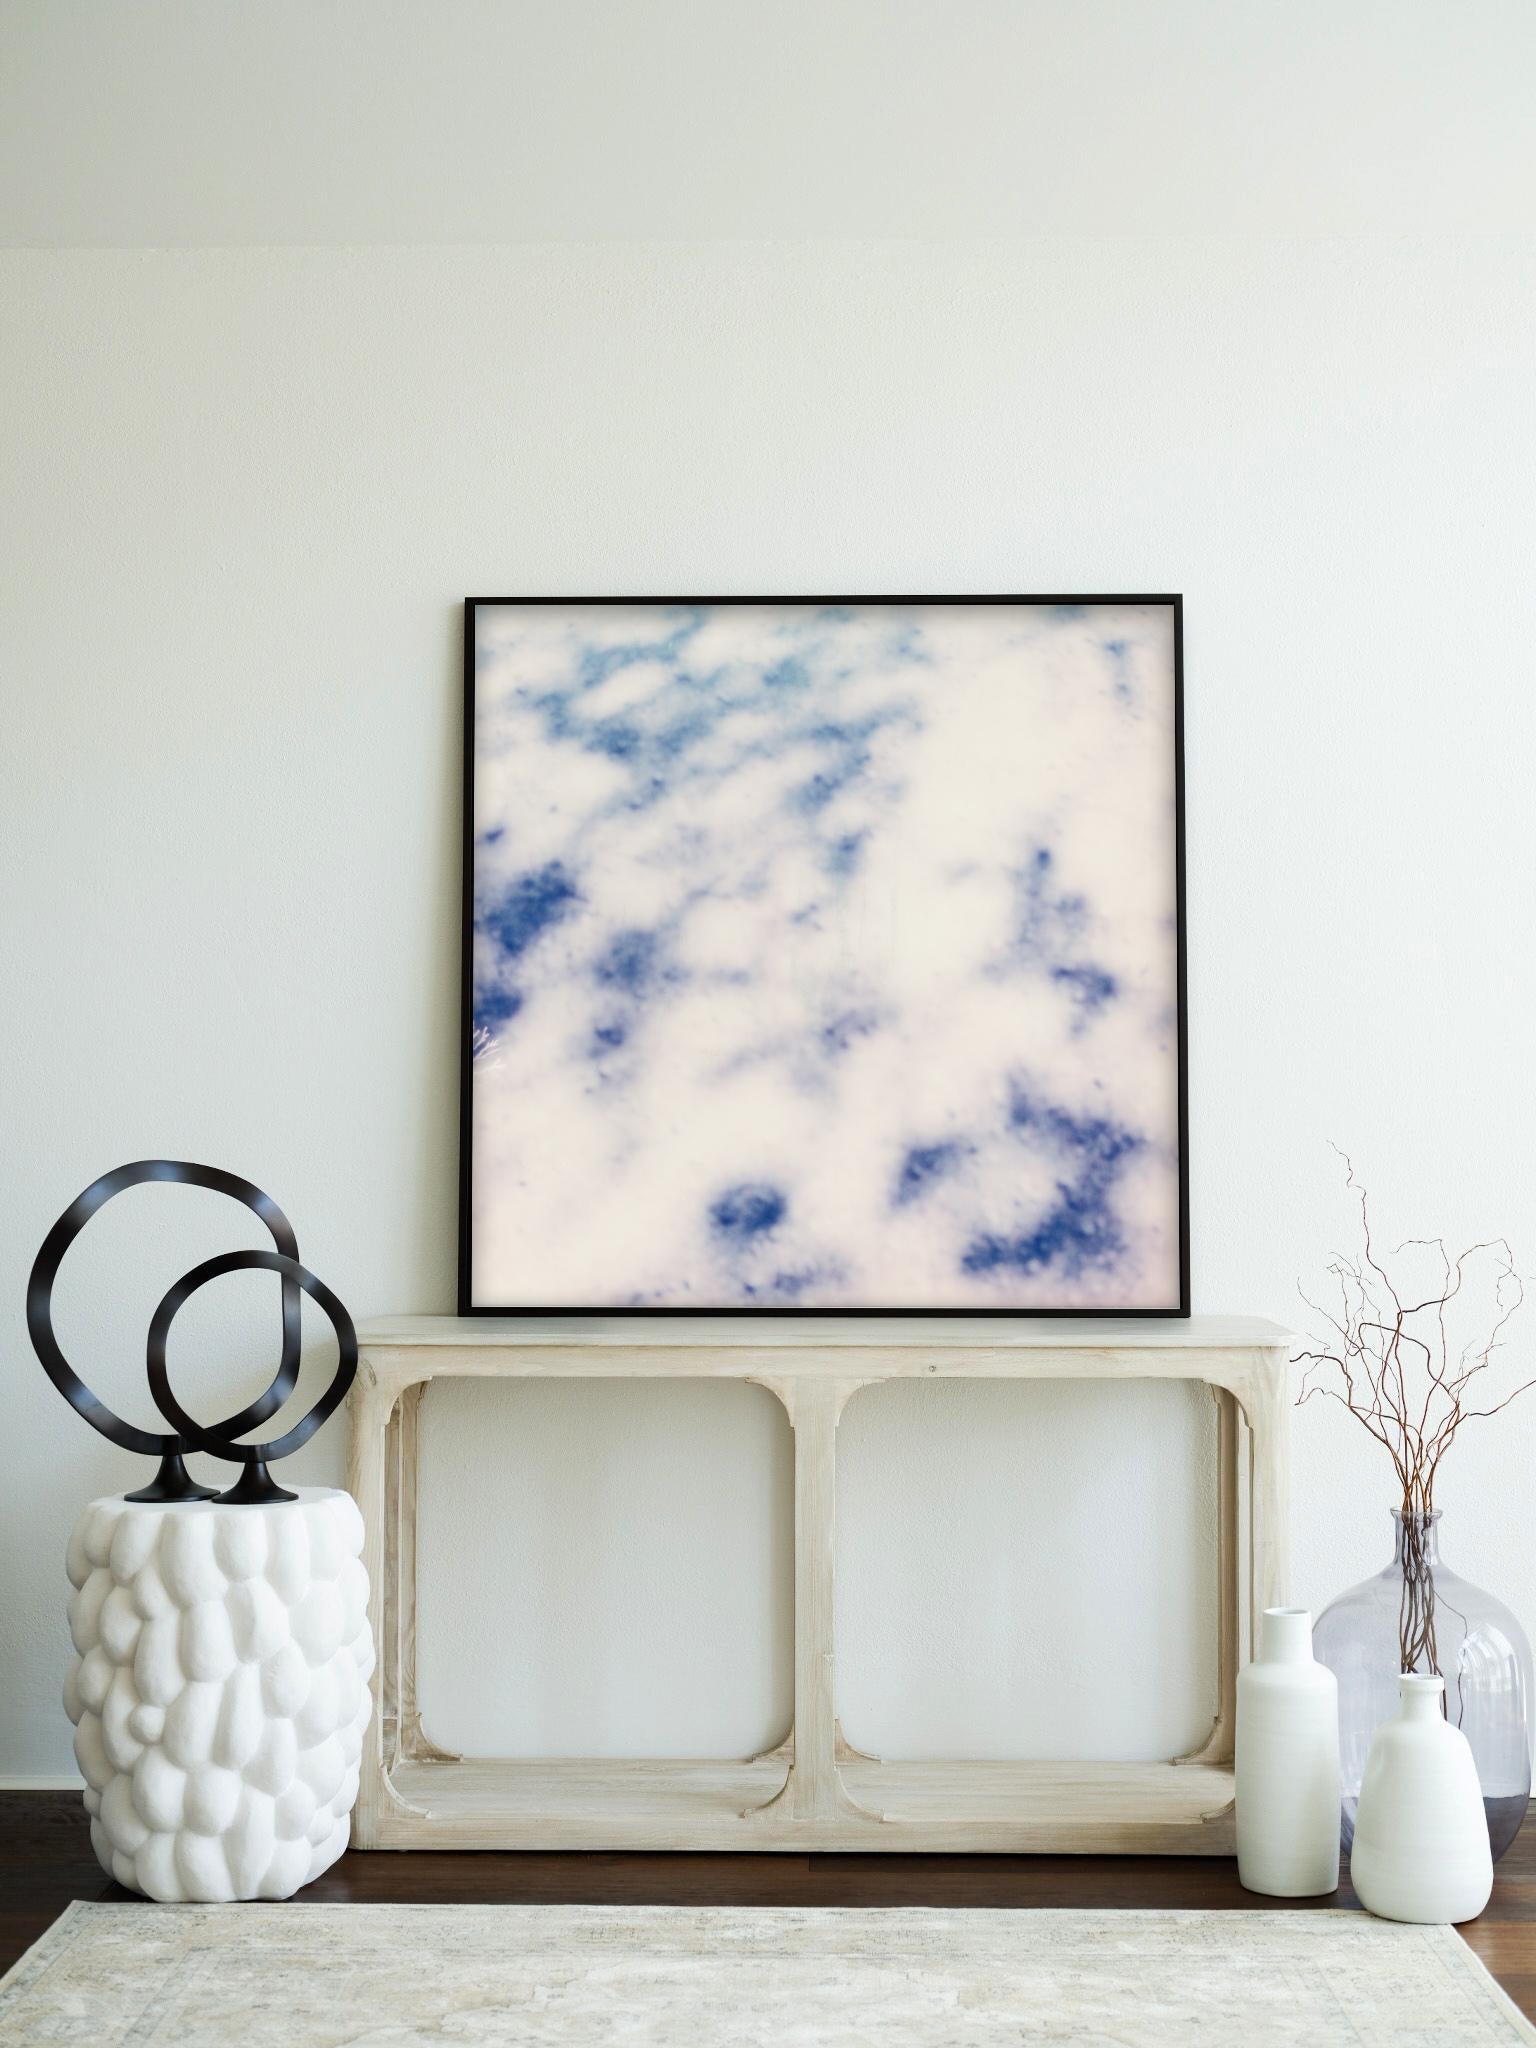 Cloud Study I - Zeitgenössischer fotografischer Druck, gerahmt (Grau), Abstract Print, von Pia Clodi